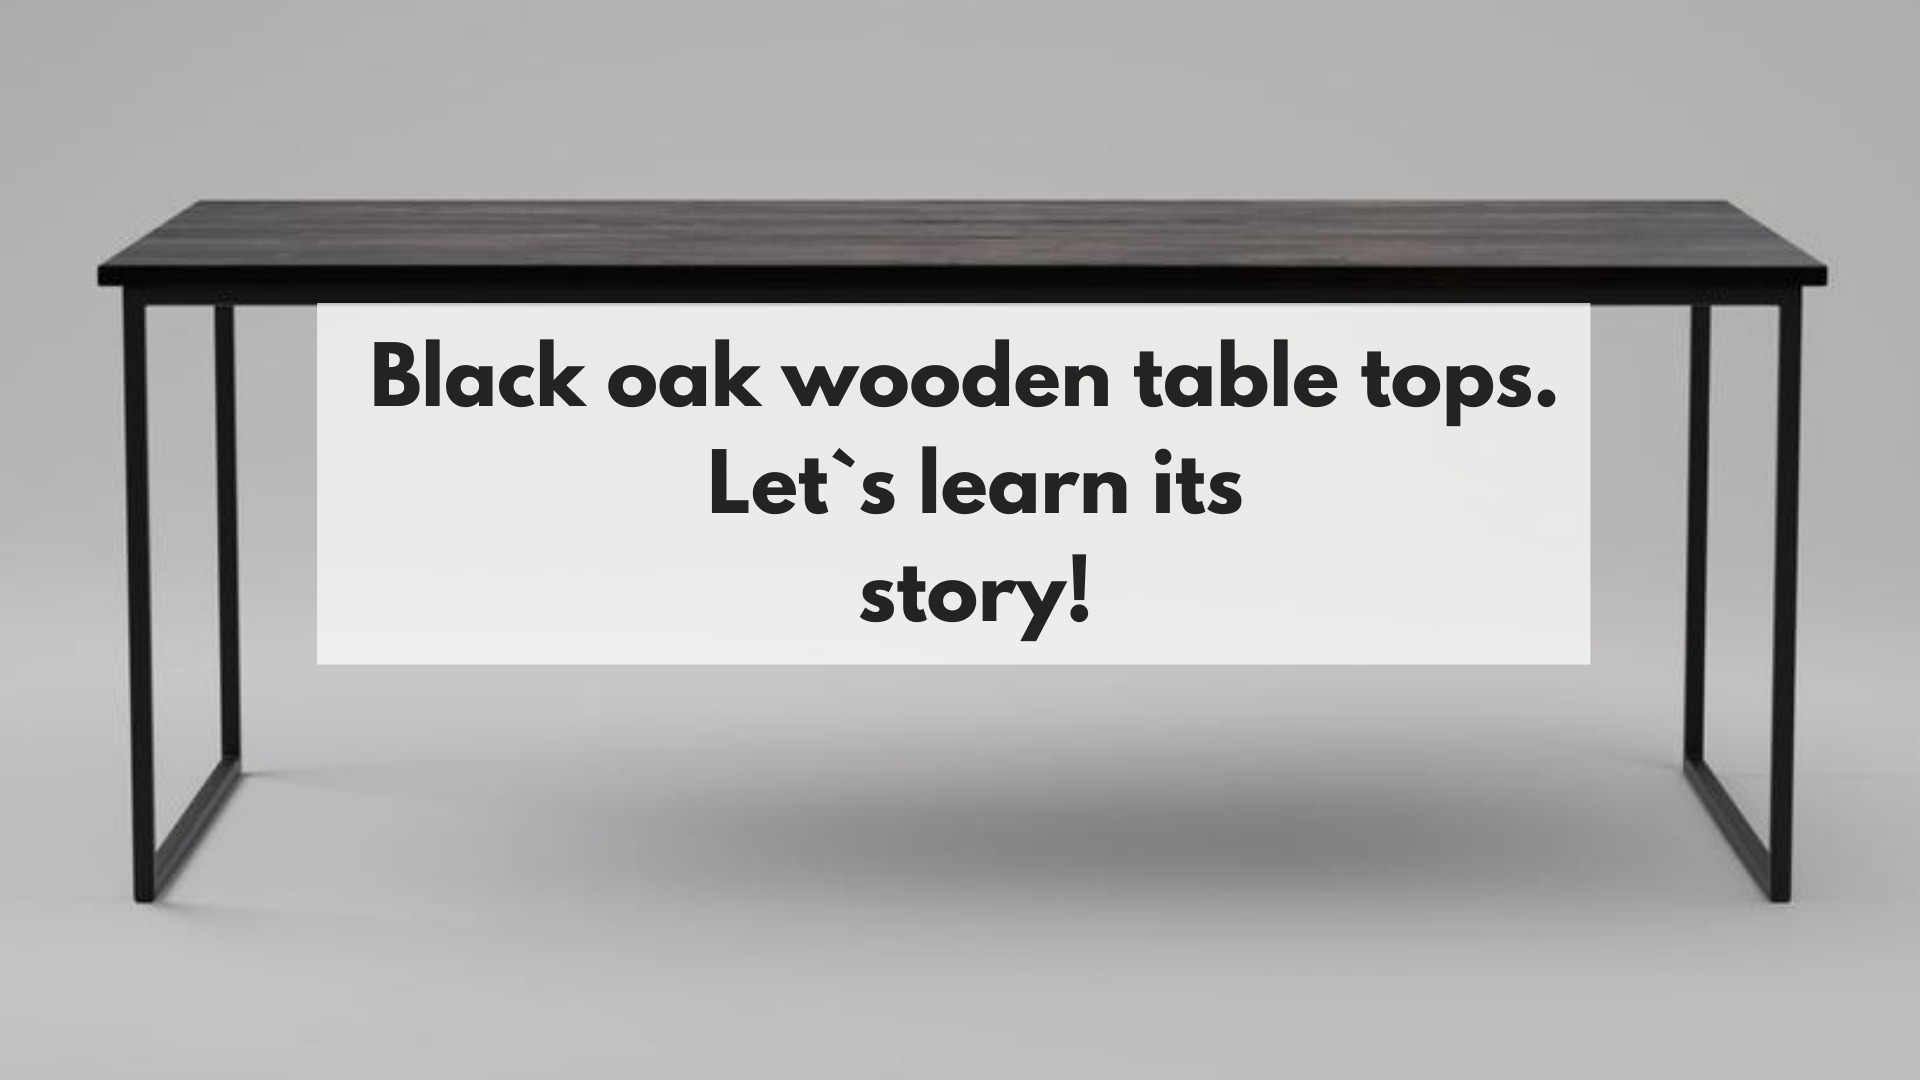 Black oak wooden table tops